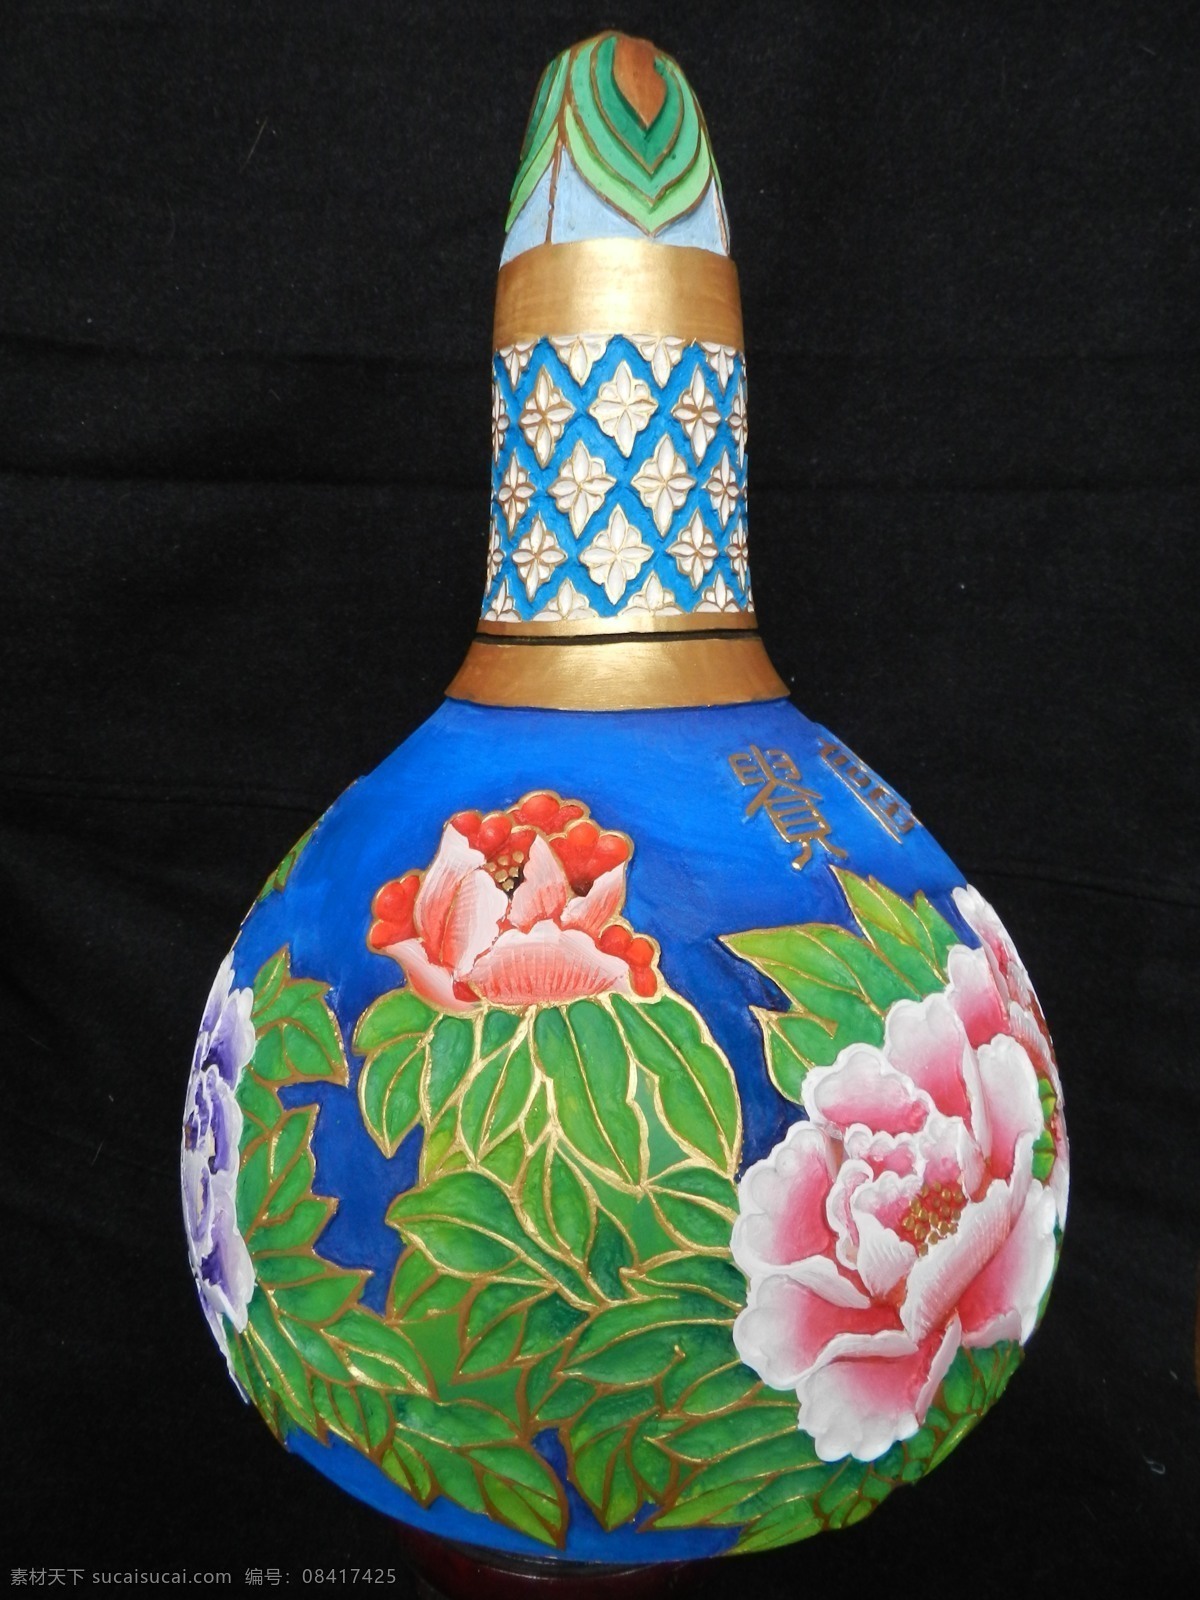 葫芦 雕刻 雕刻葫芦 葫芦画廊 牡丹 玫瑰 彩绘 葫芦艺术 美术绘画 文化艺术